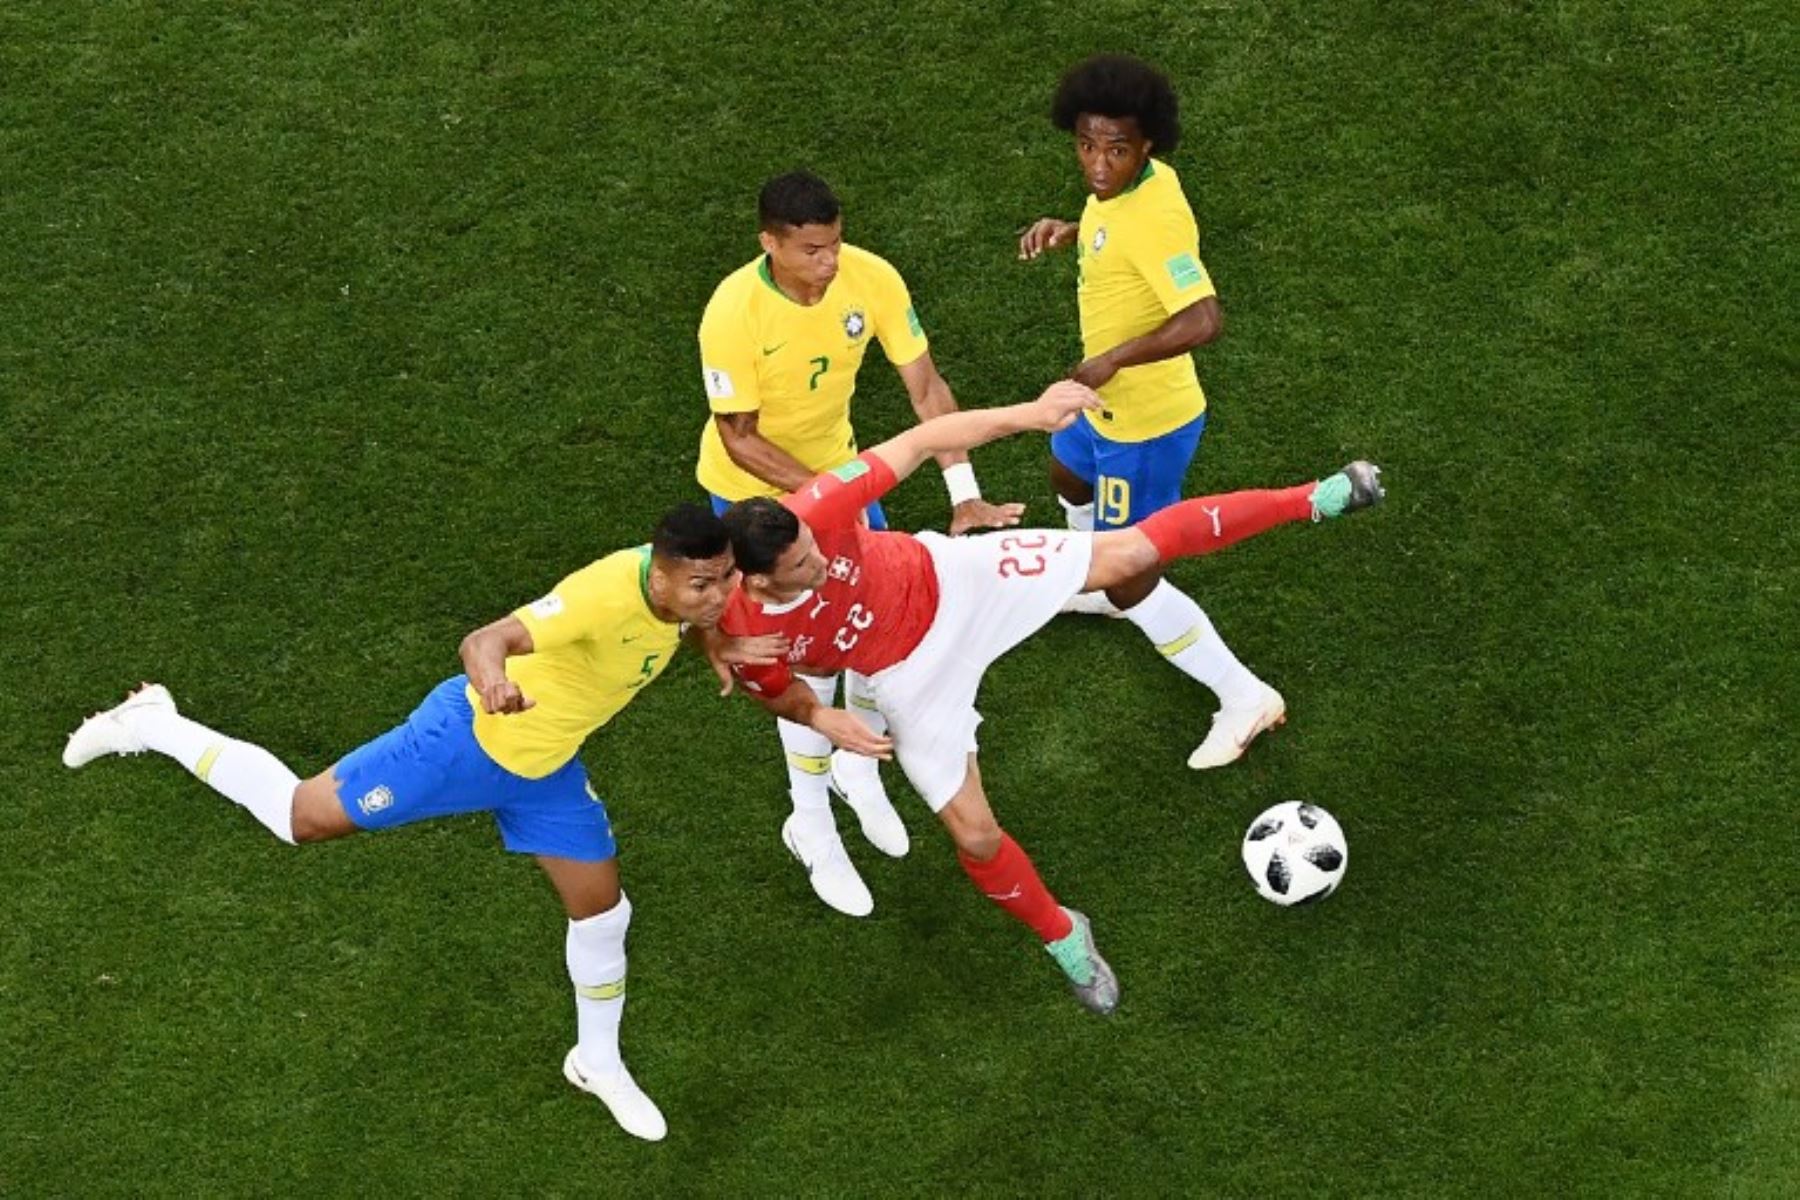 El centrocampista brasileño Casemiro pelea por el balón con el defensa suizo Fabian Schaer durante el partido de fútbol del Grupo E de la Copa Mundial Rusia 2018 entre Brasil y Suiza.Foto:AFP